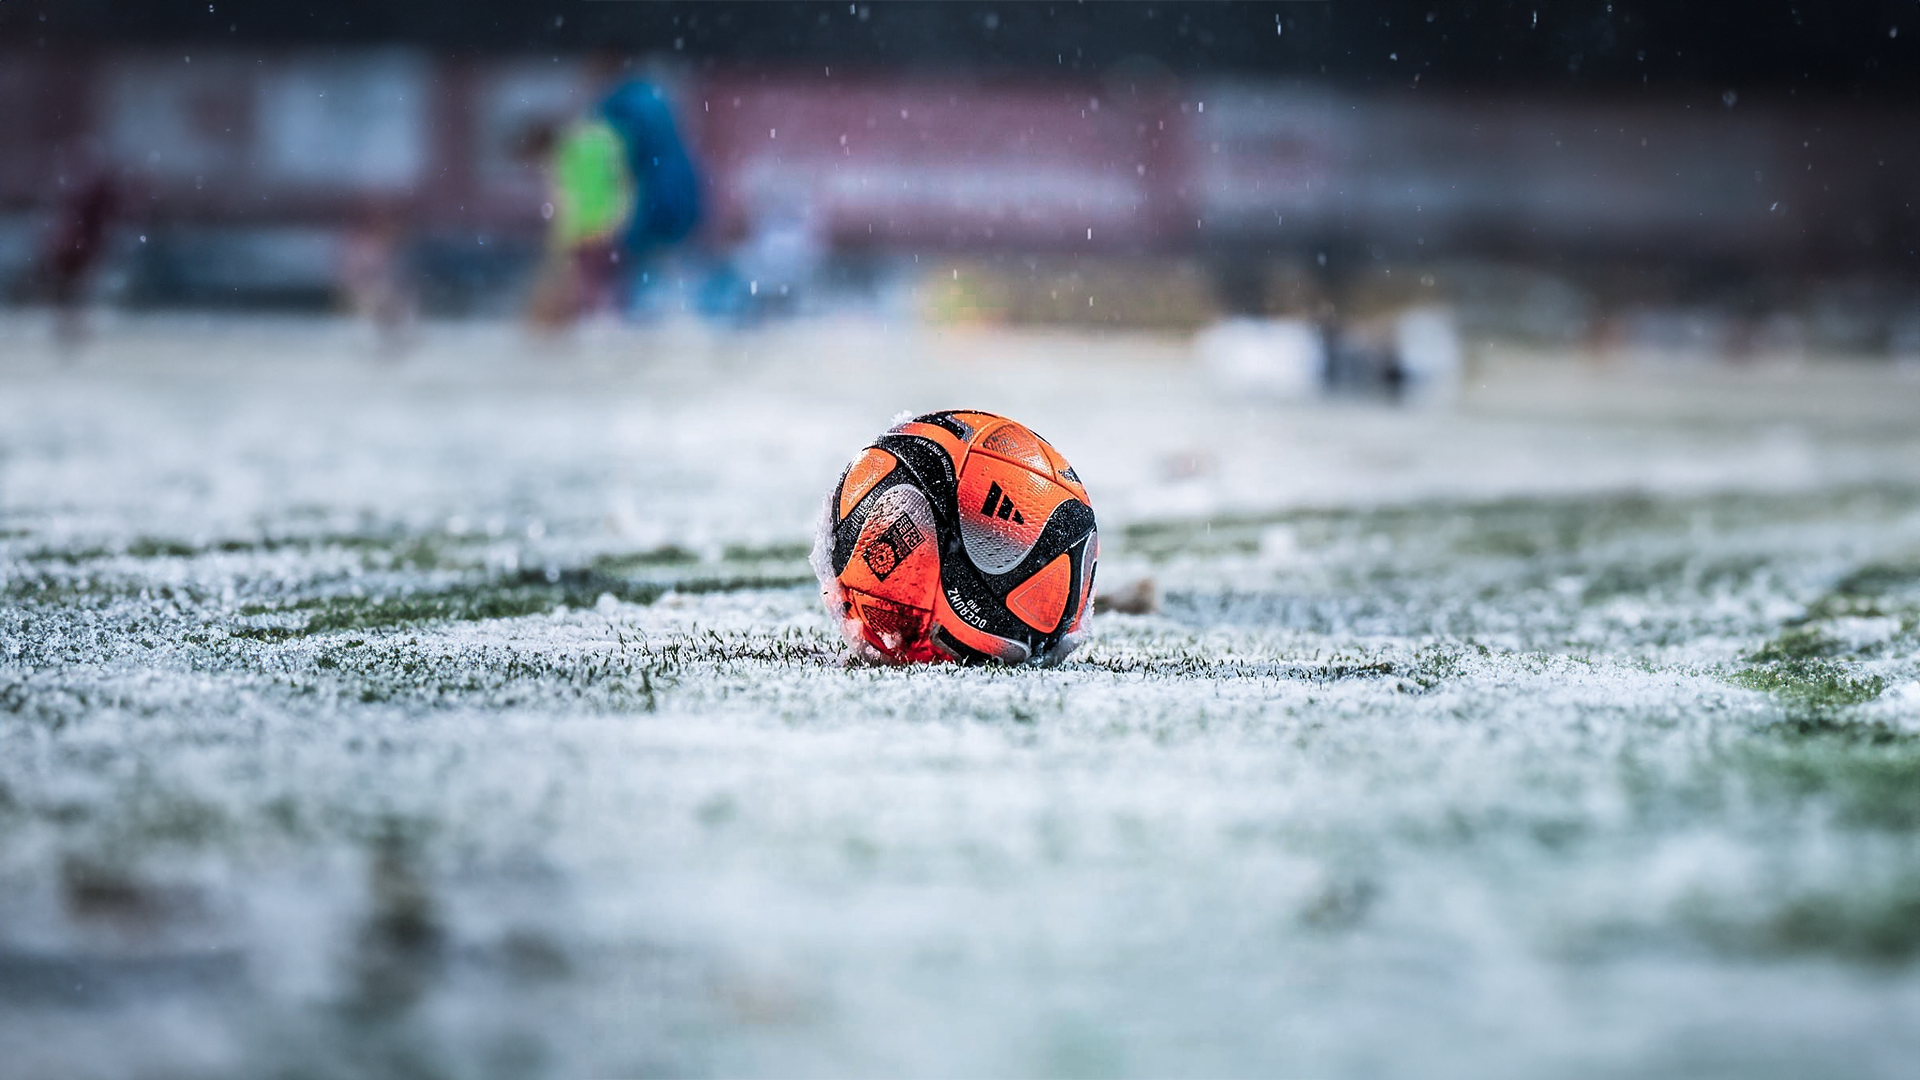 Fußball im Schnee